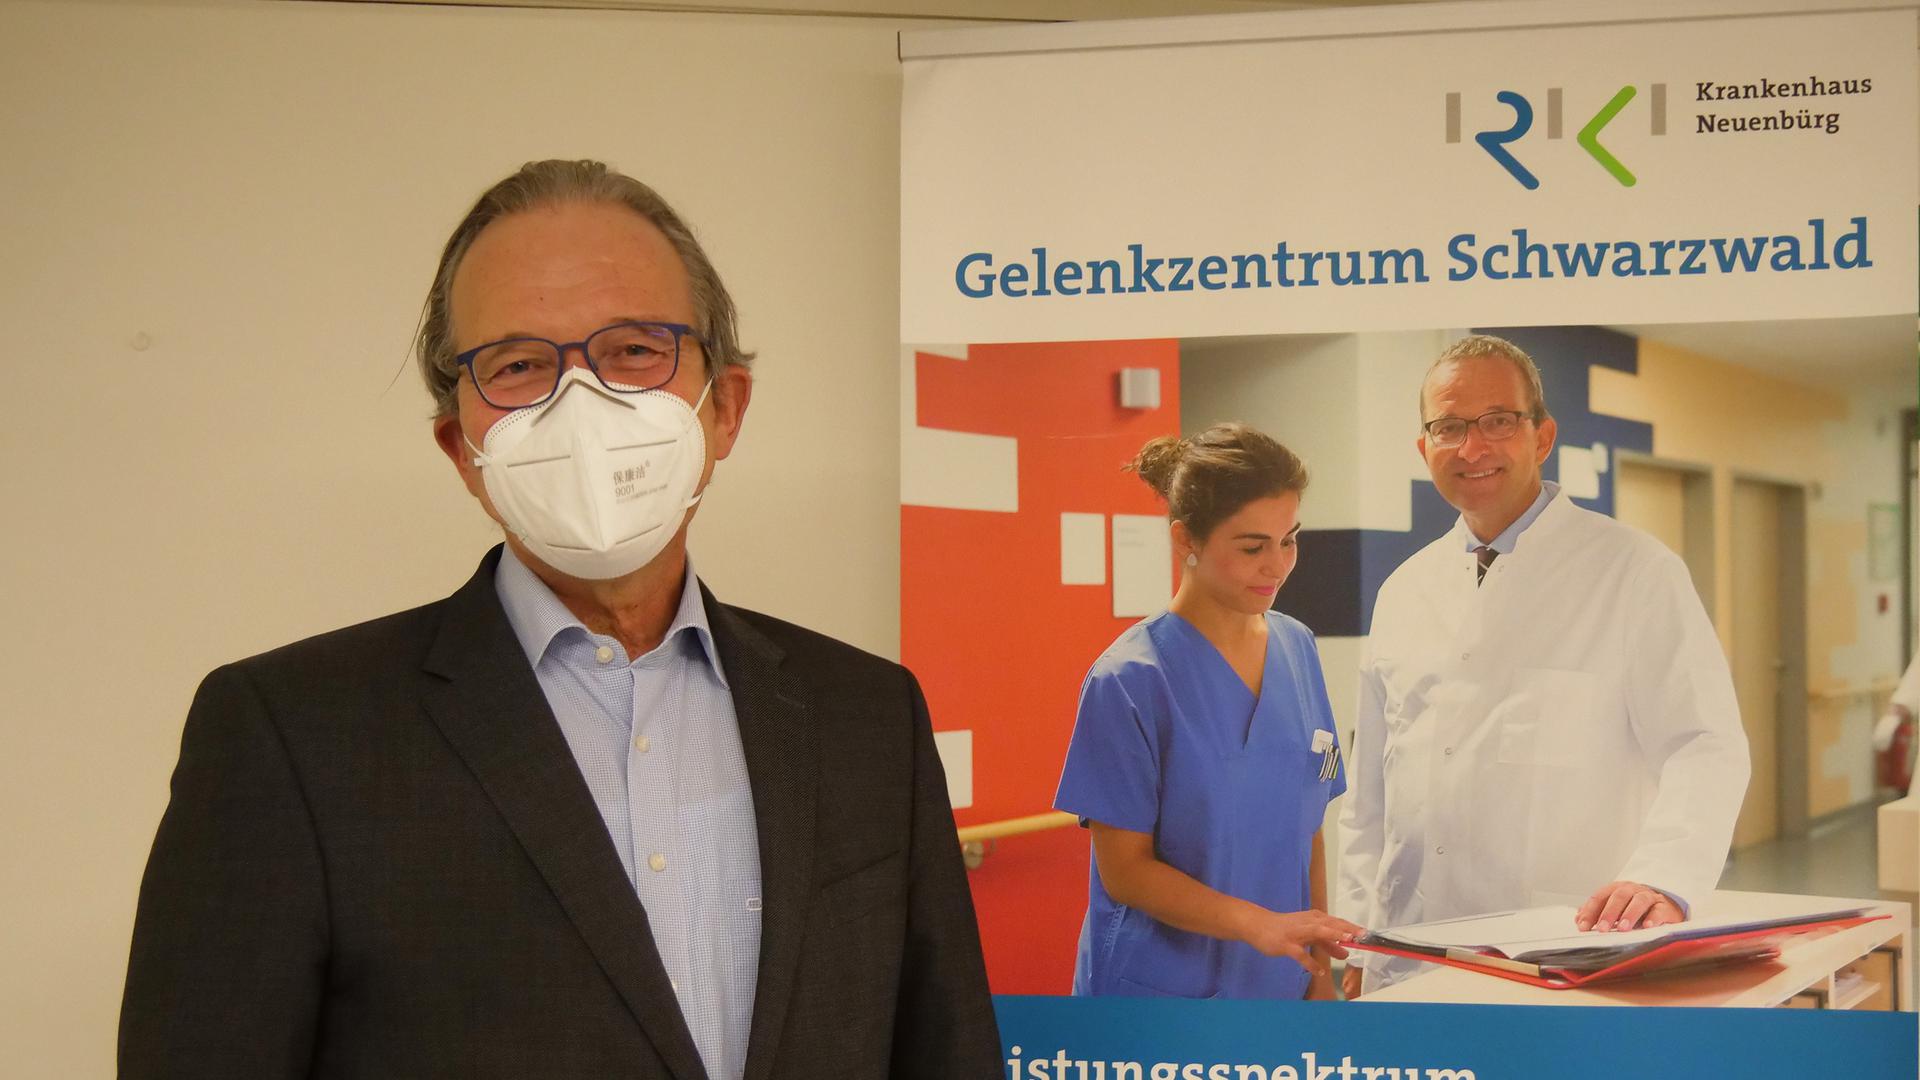 Stefan Sell, ärztlicher Direktor des Gelenkzentrum Schwarzwald in Neuenbürg, rät zu täglich zehn bis 15 Minuten kurzen Trainingseinheiten 